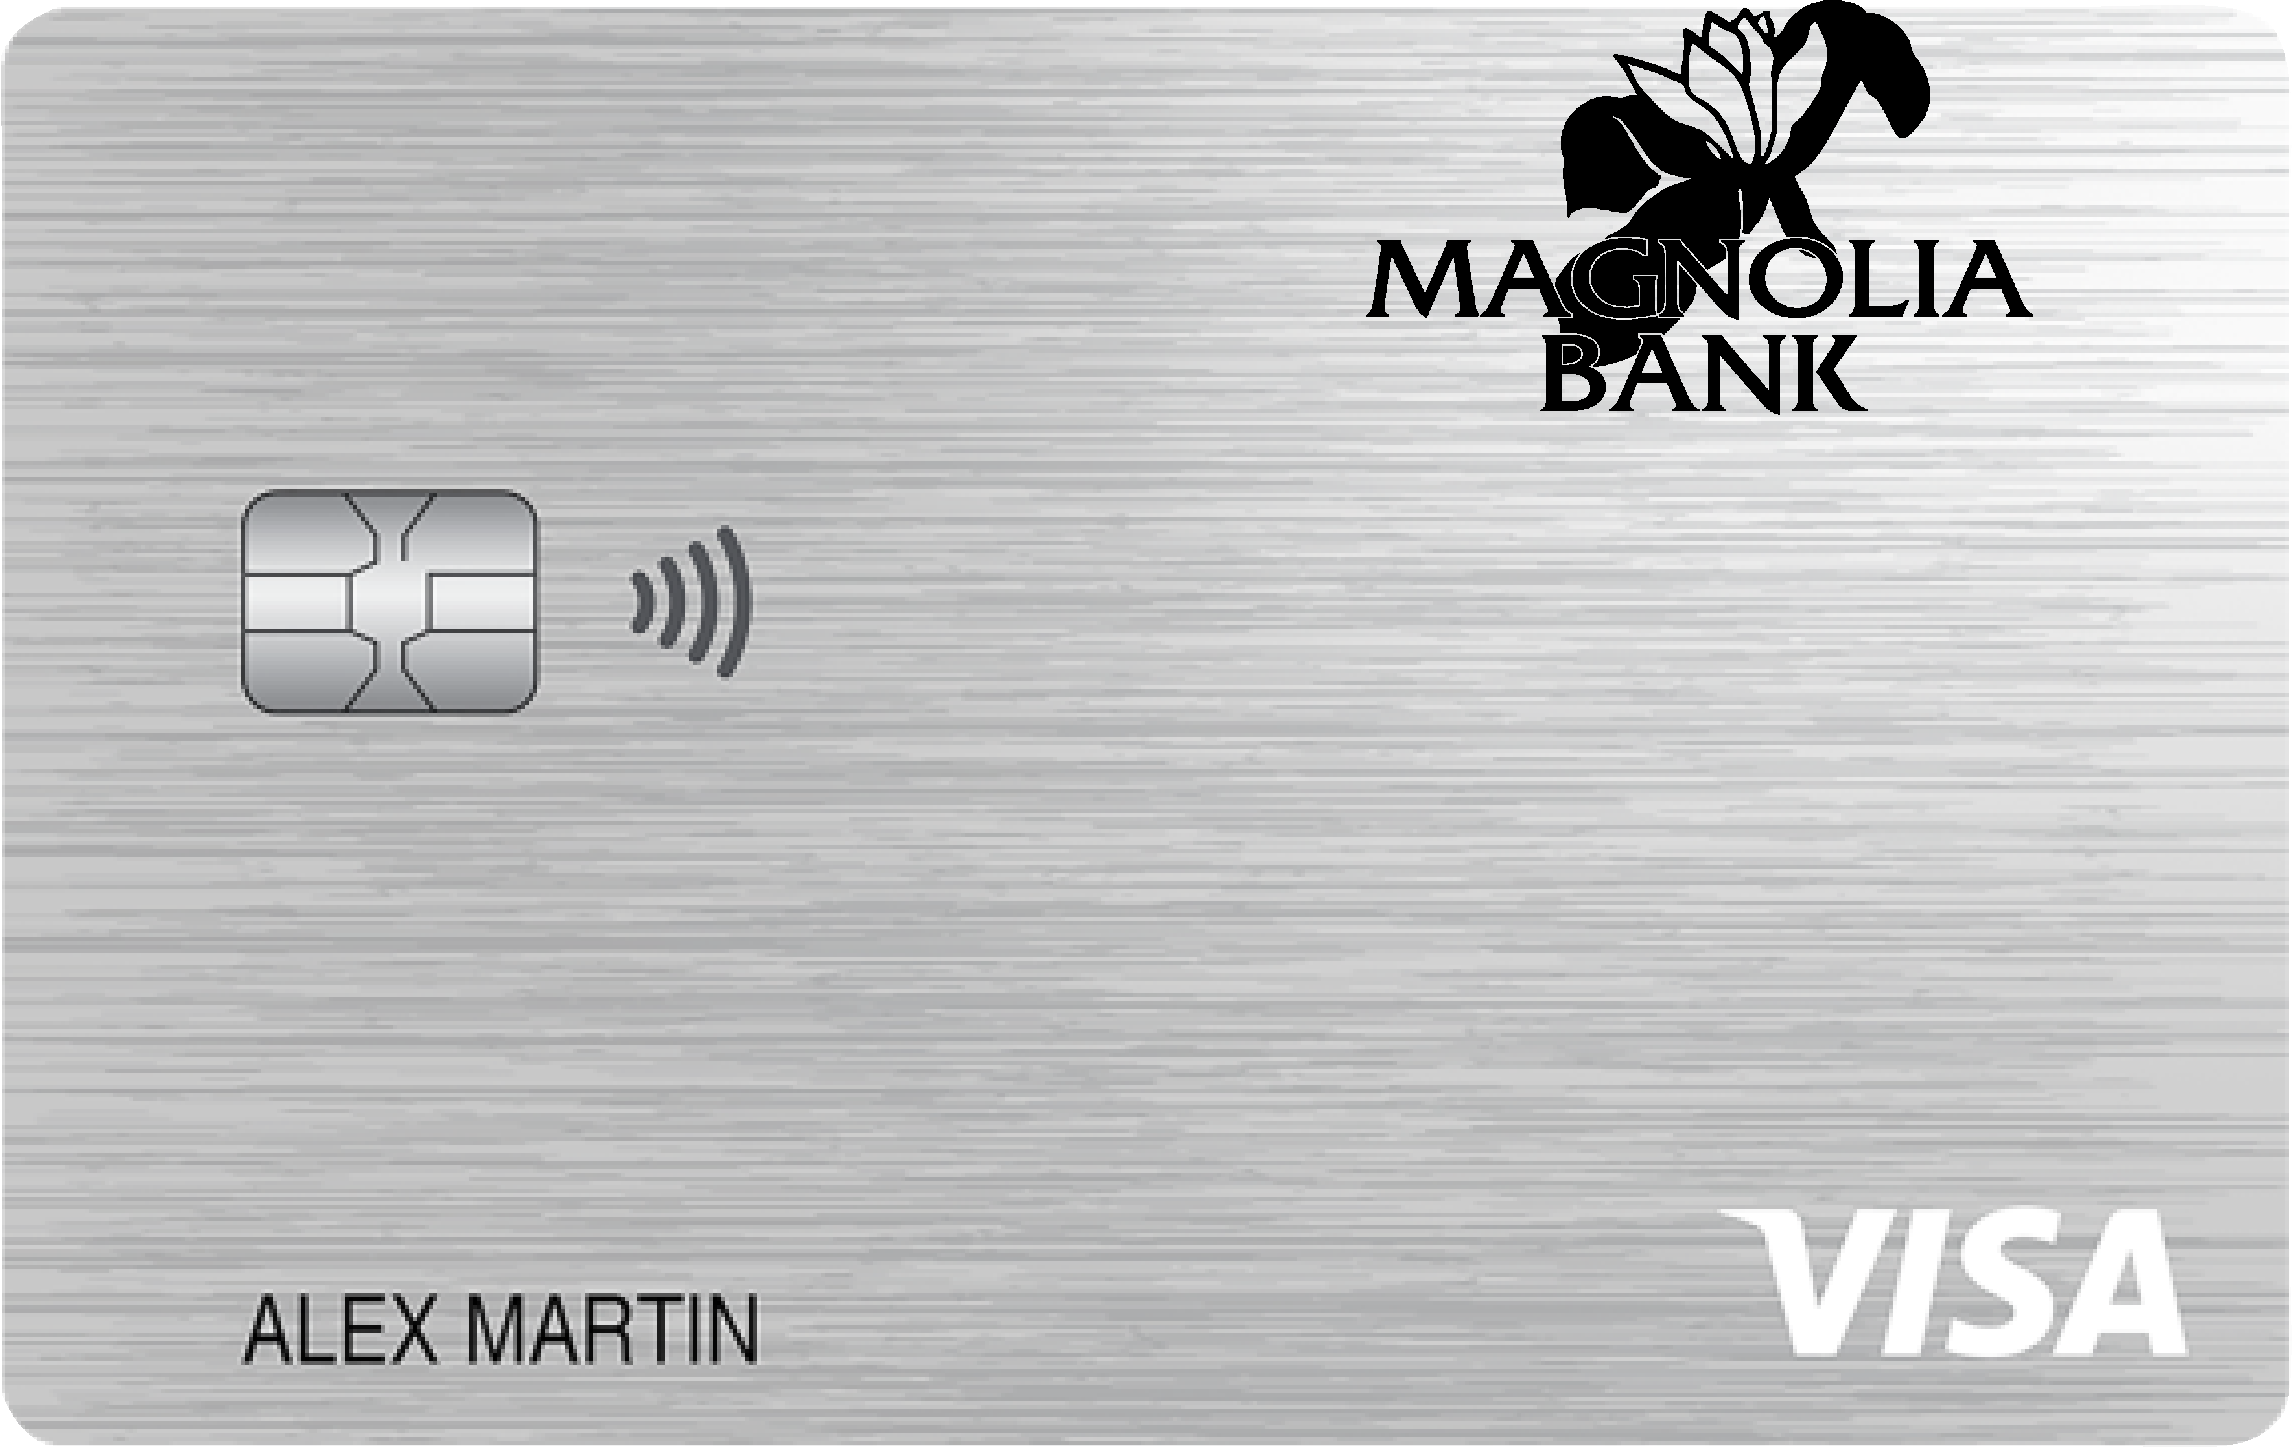 Magnolia Bank Platinum Card